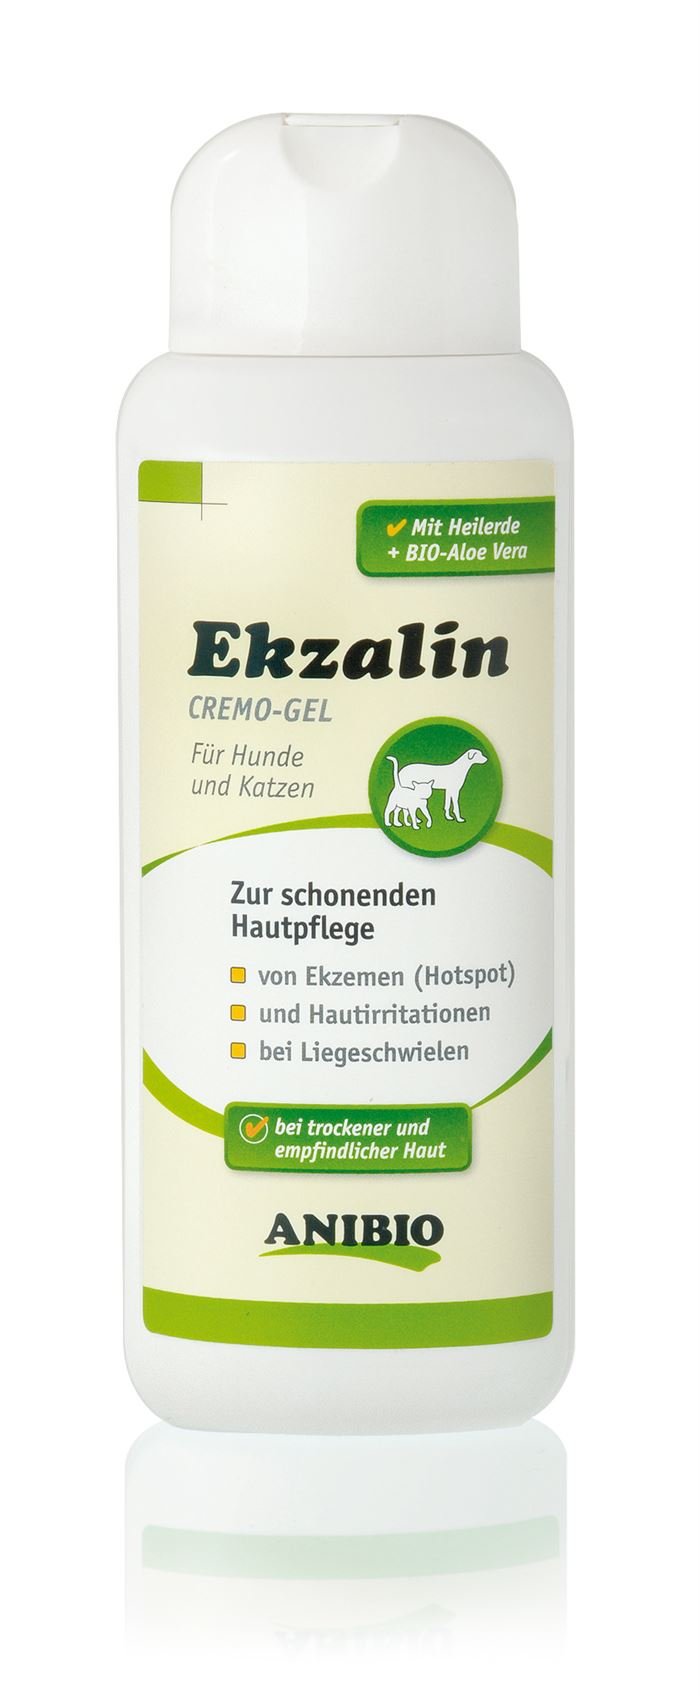 Anibio - Ekzalin cream gel for dogs and cats - (95039) - Kjæledyr og utstyr